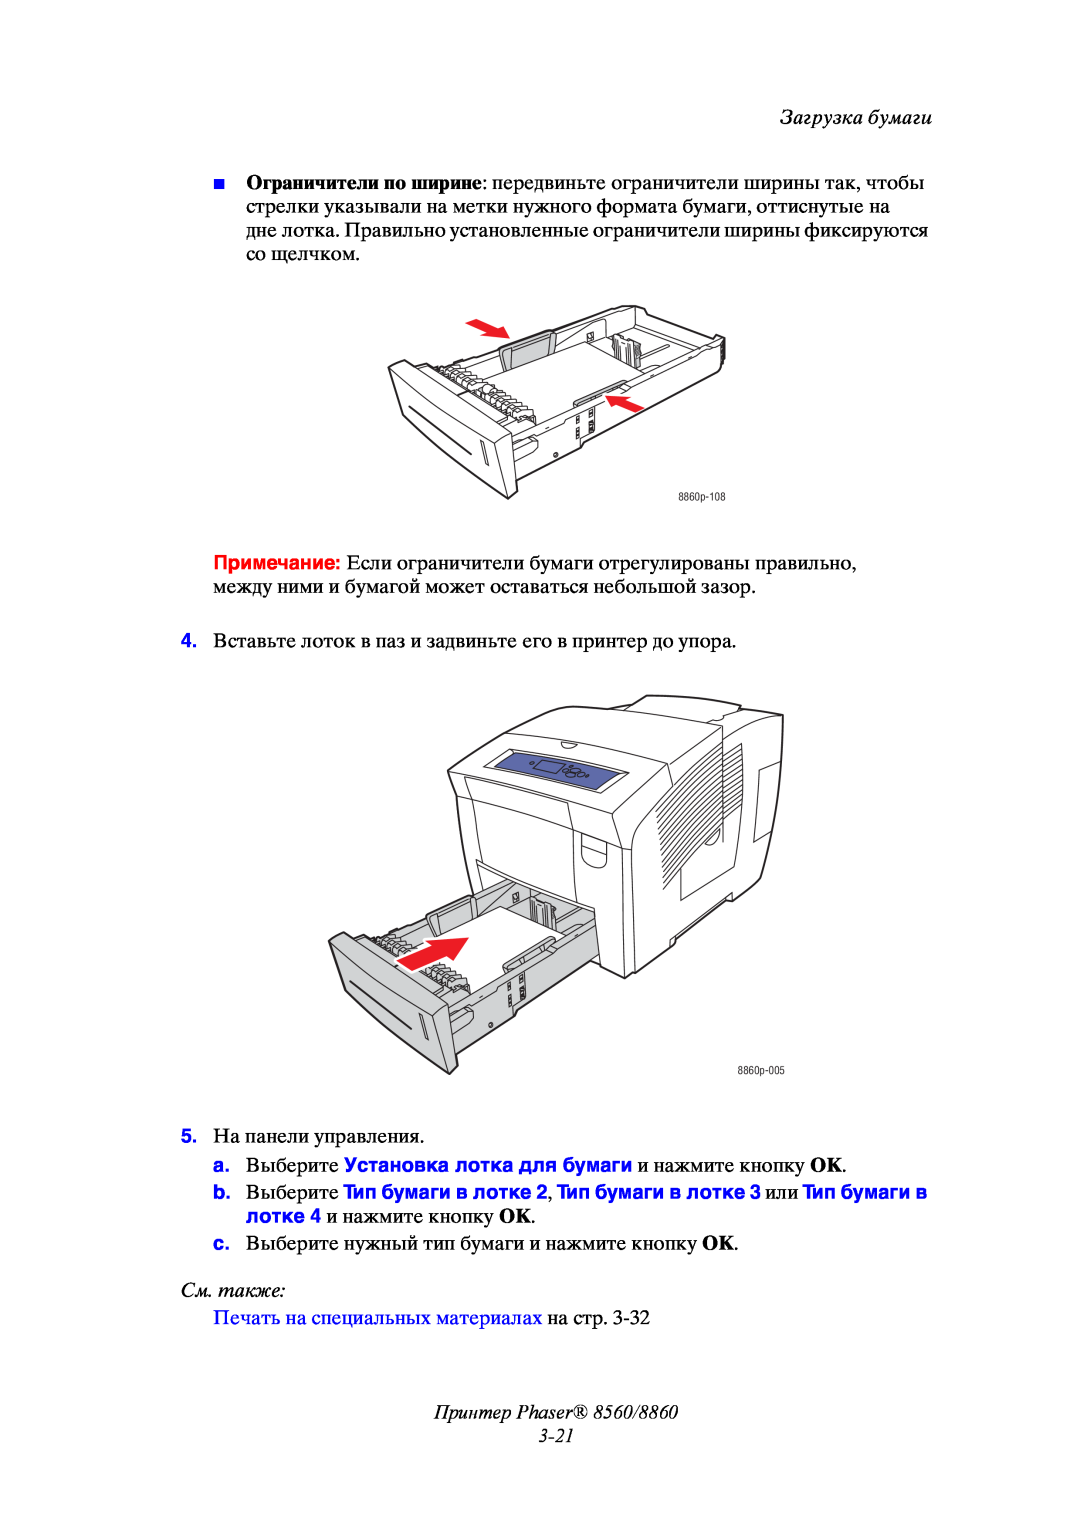 Xerox manual Принтер Phaser 8560/8860 3-21, Загрузка бумаги, См. также, Печать на специальных материалах на стр 